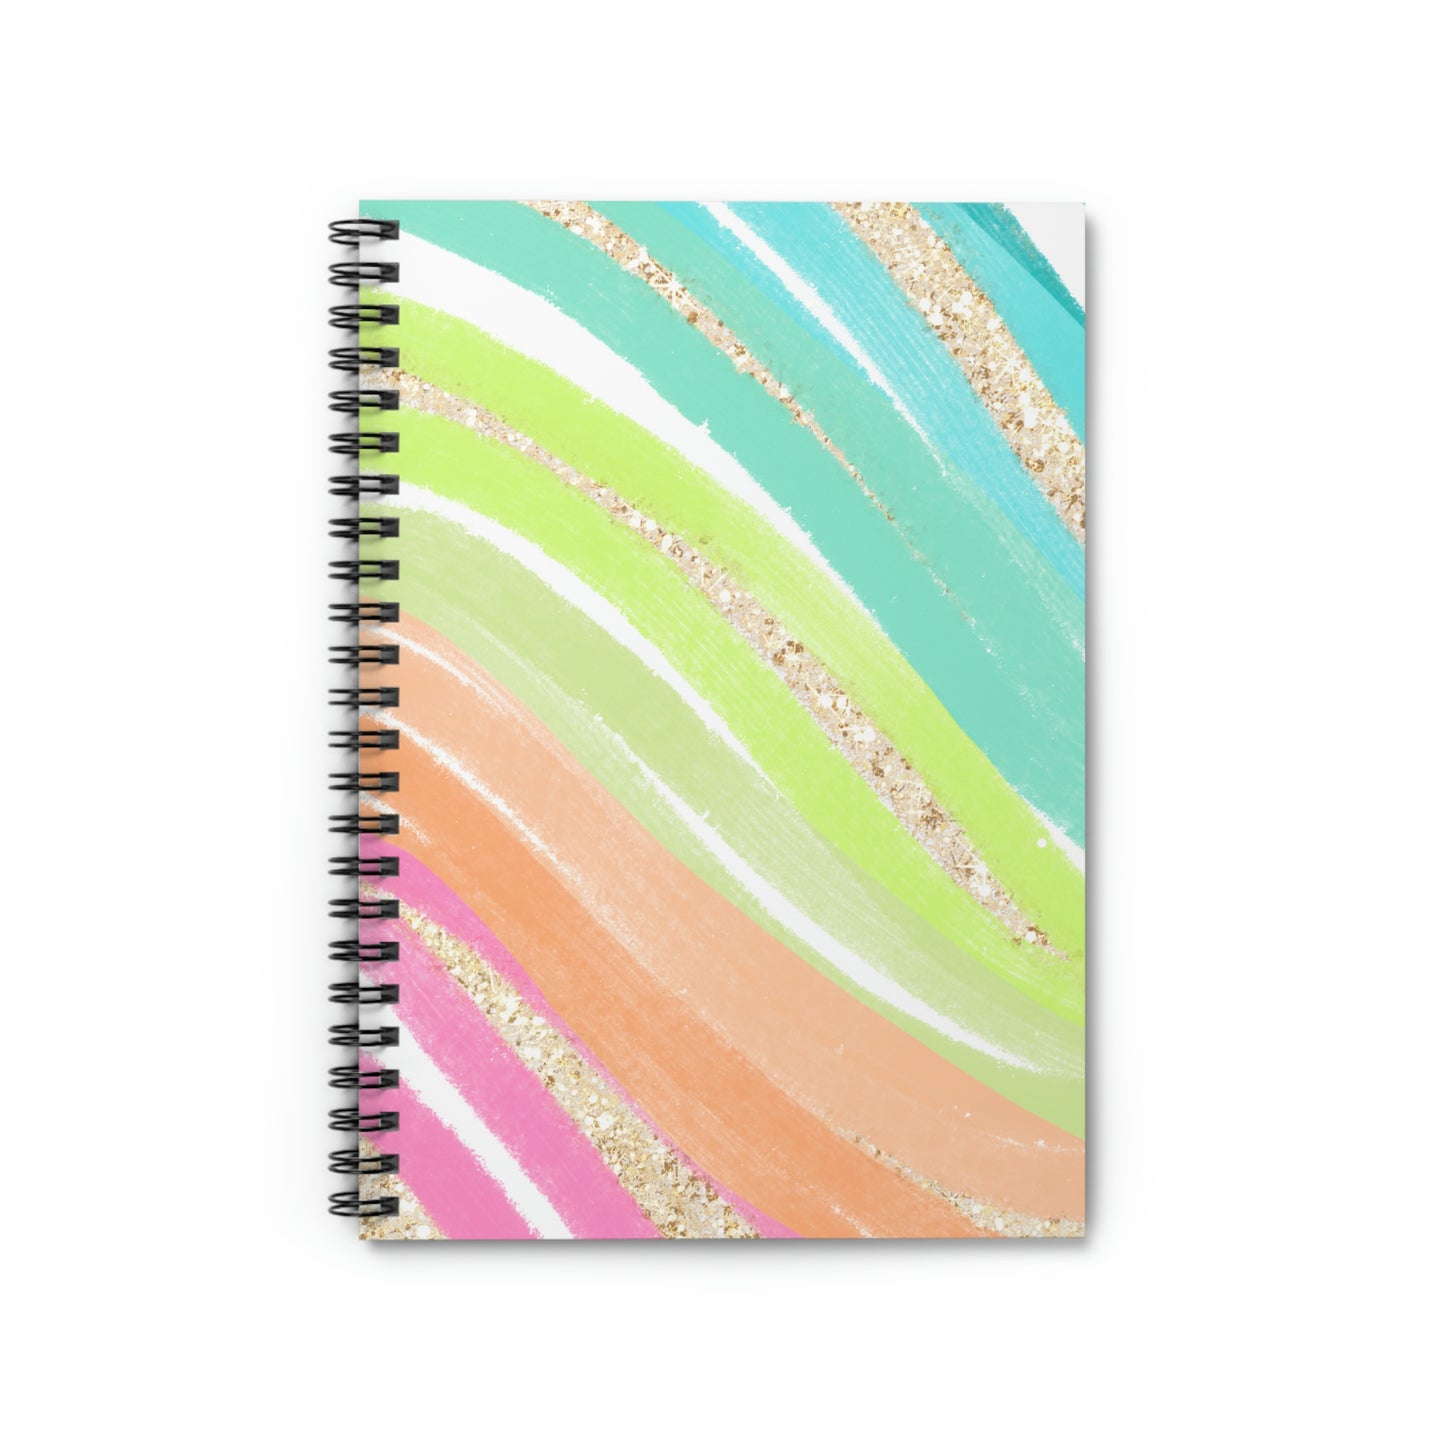 Glitter Panties | Spiral Notebook